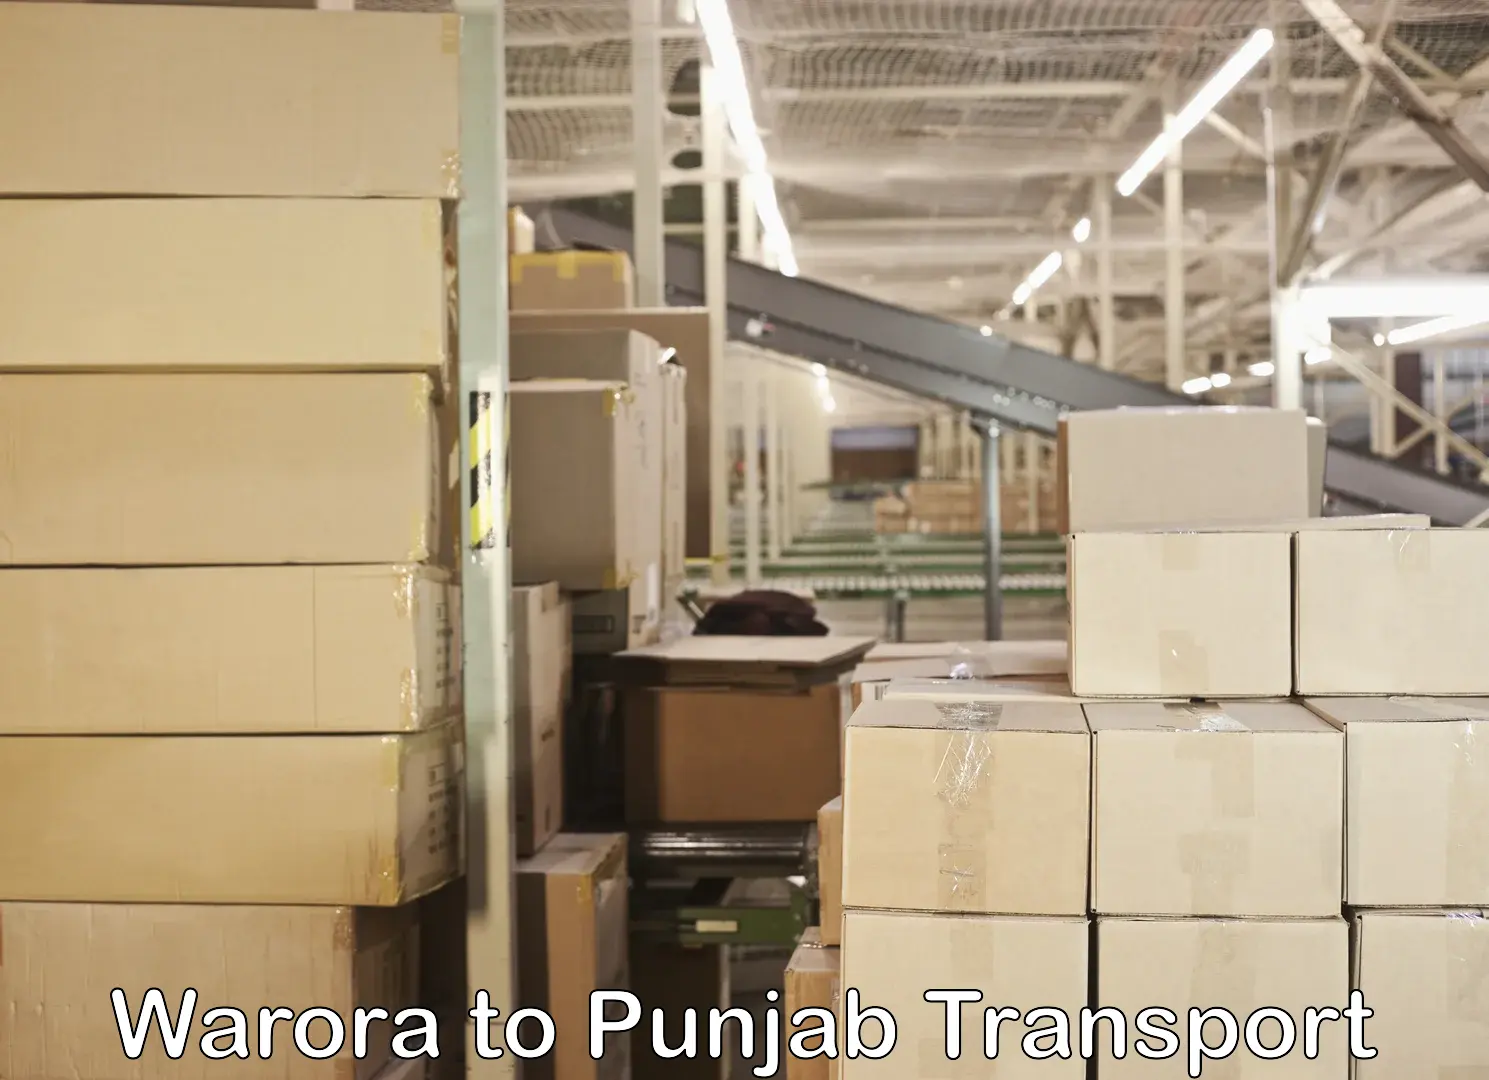 Land transport services Warora to Punjab